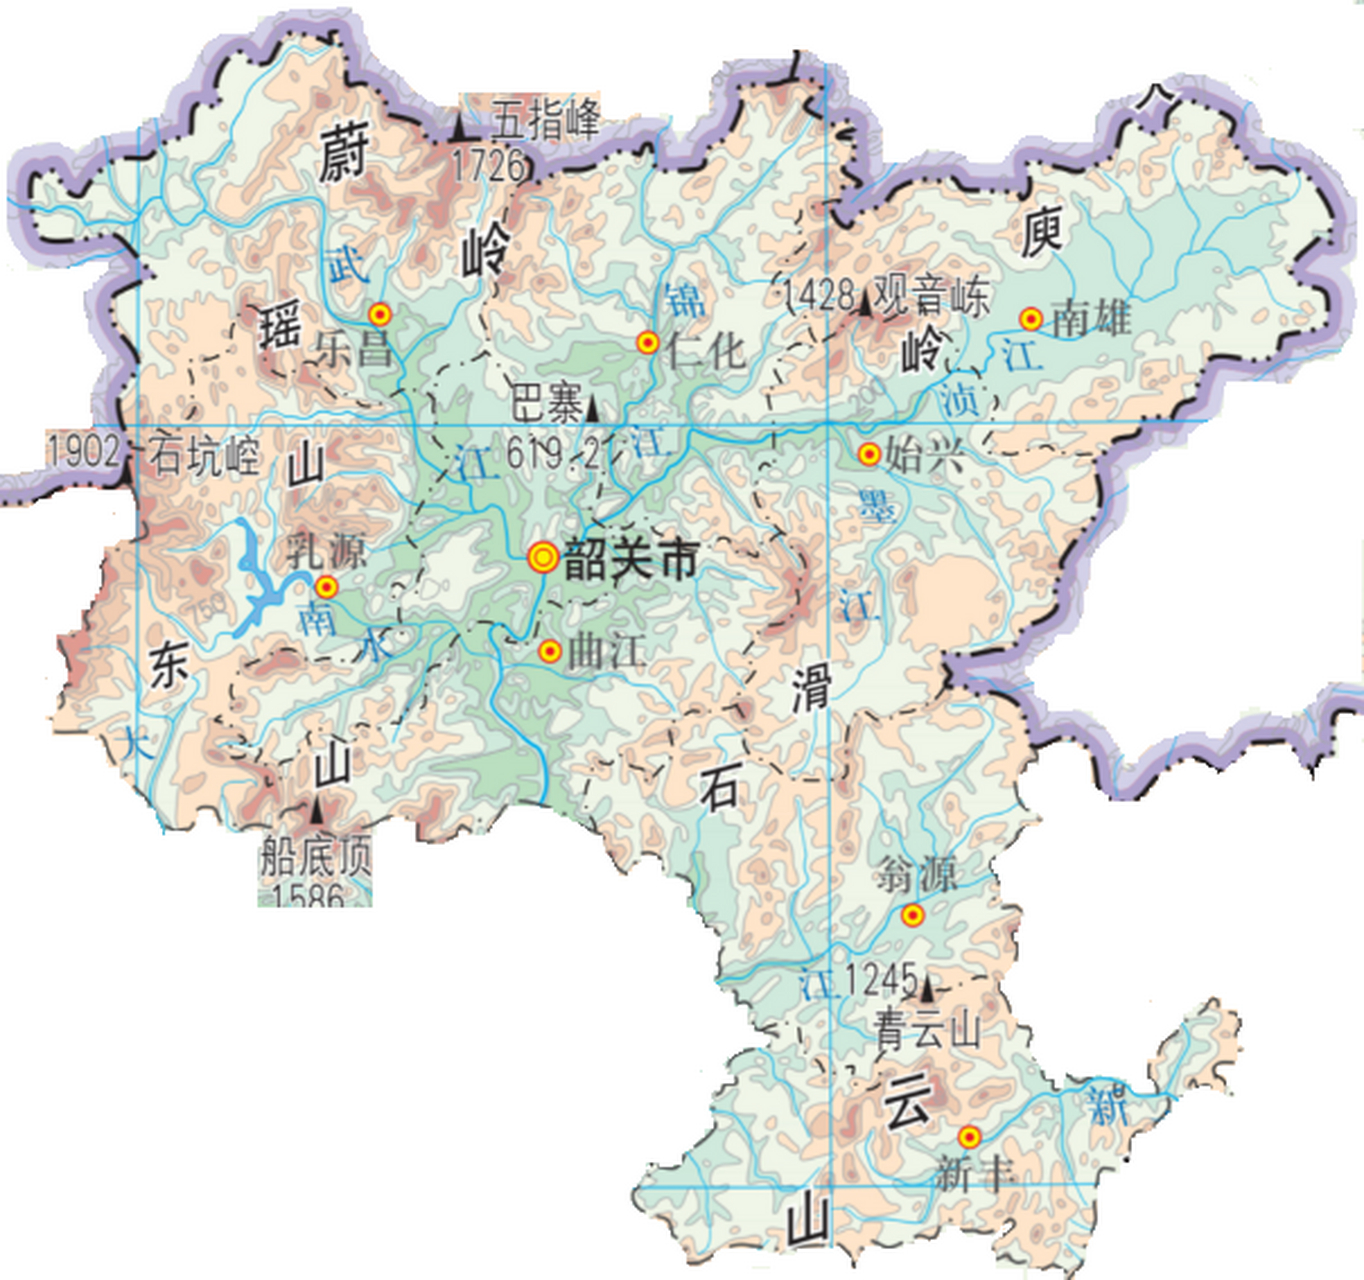 位于粤北山区里面的韶关市,看韶关地形图基本都是莽莽群山,市区与县城